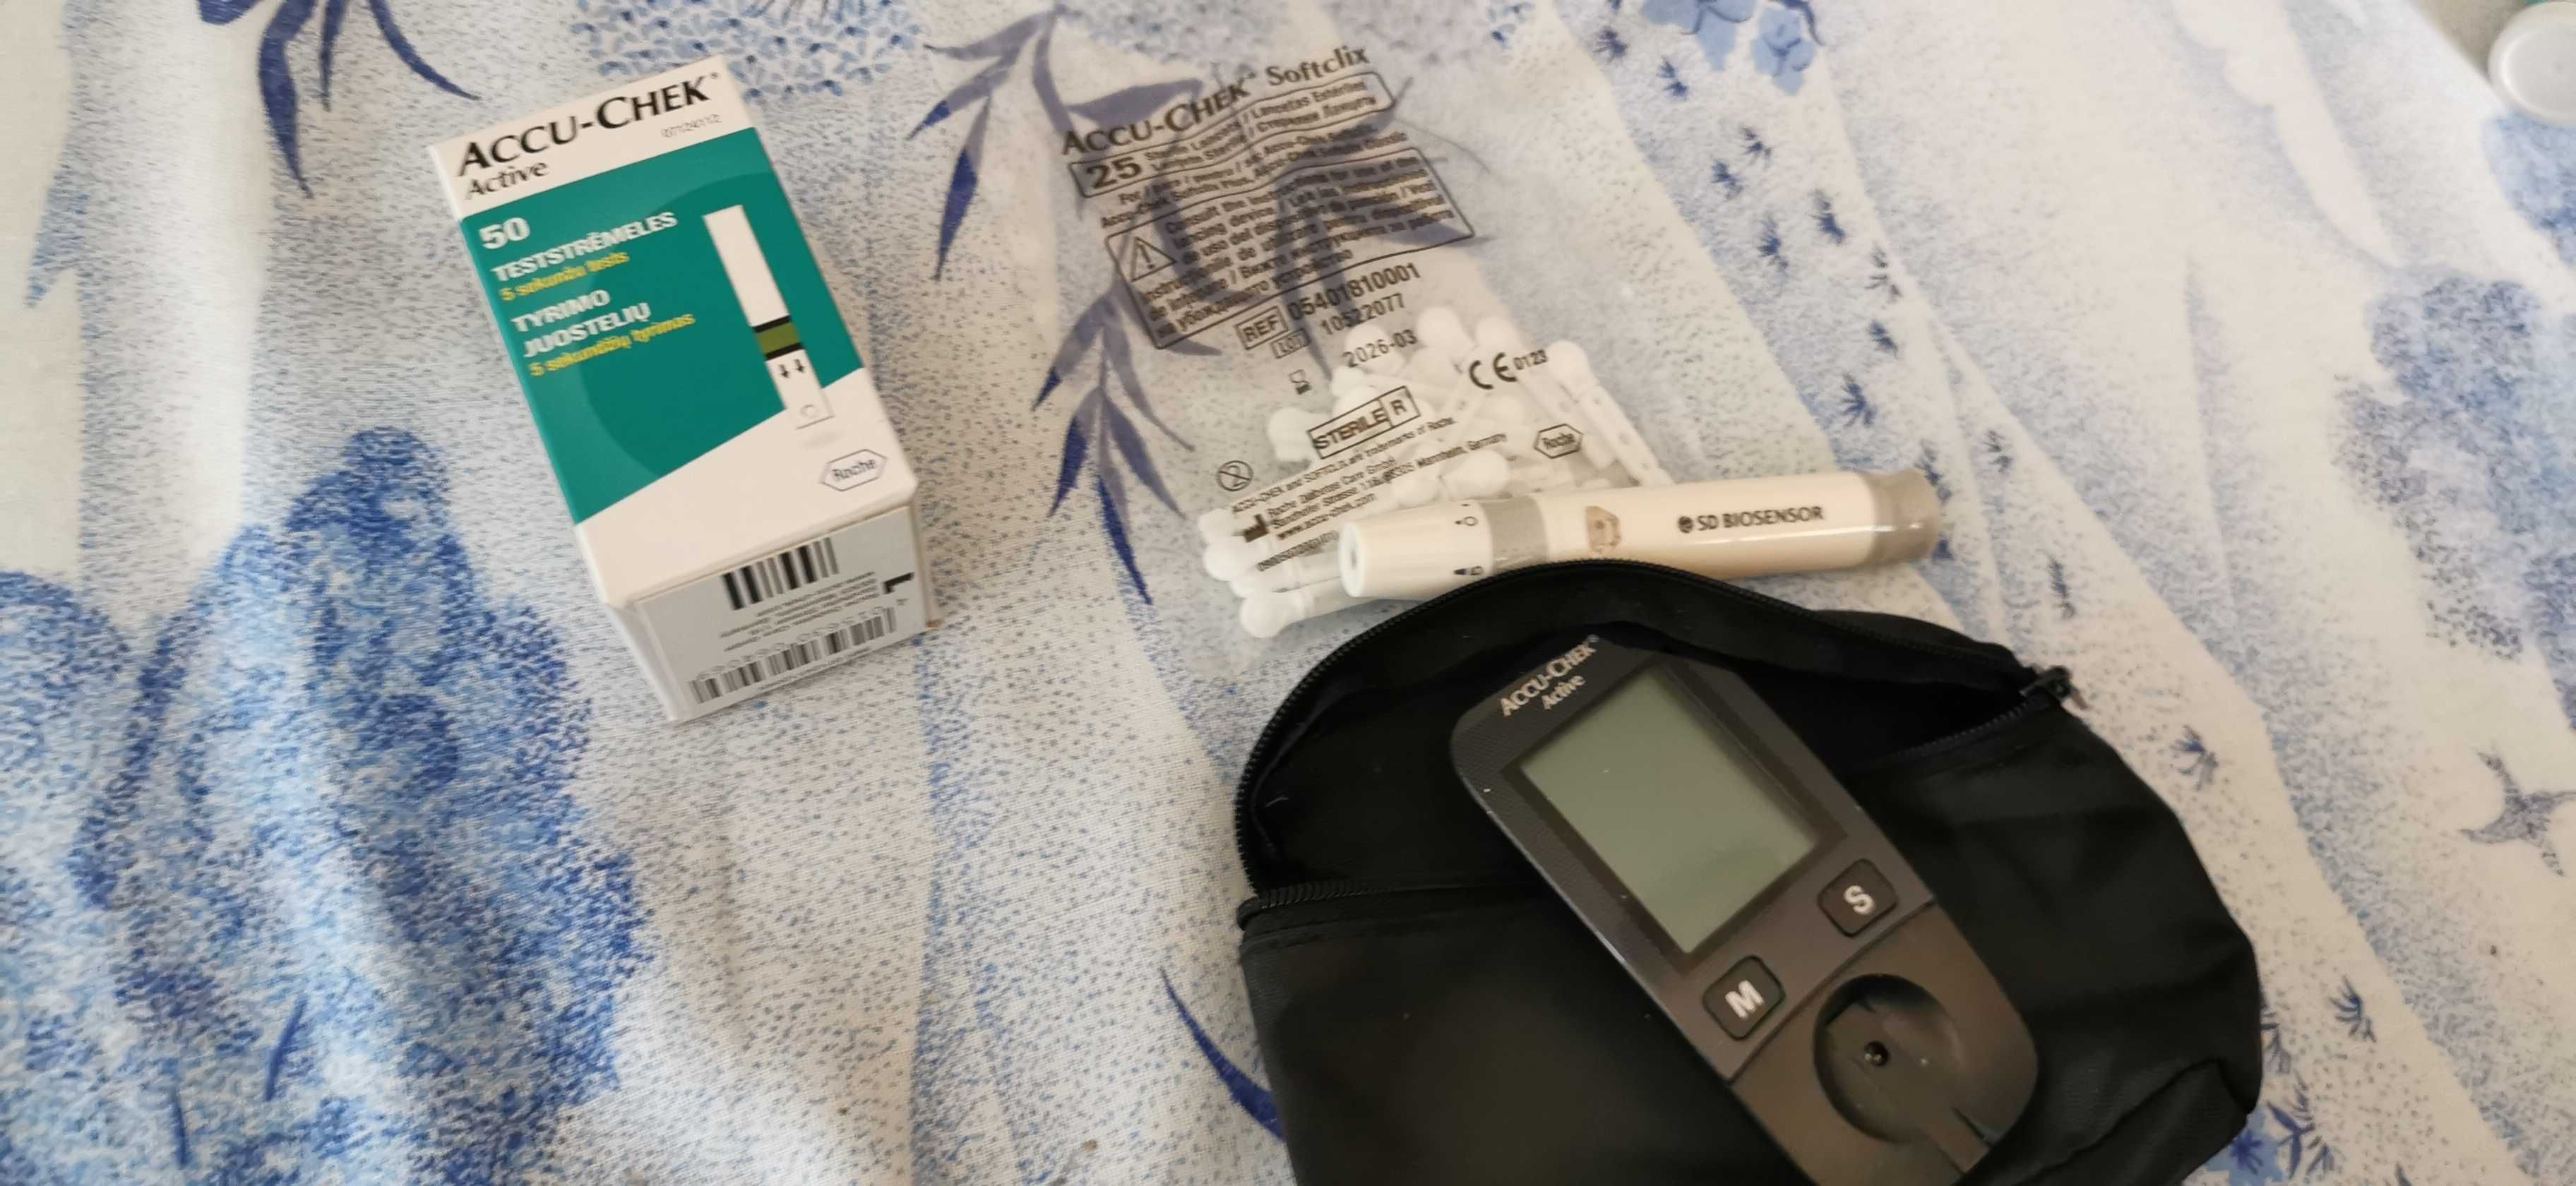 accu check tester diabet